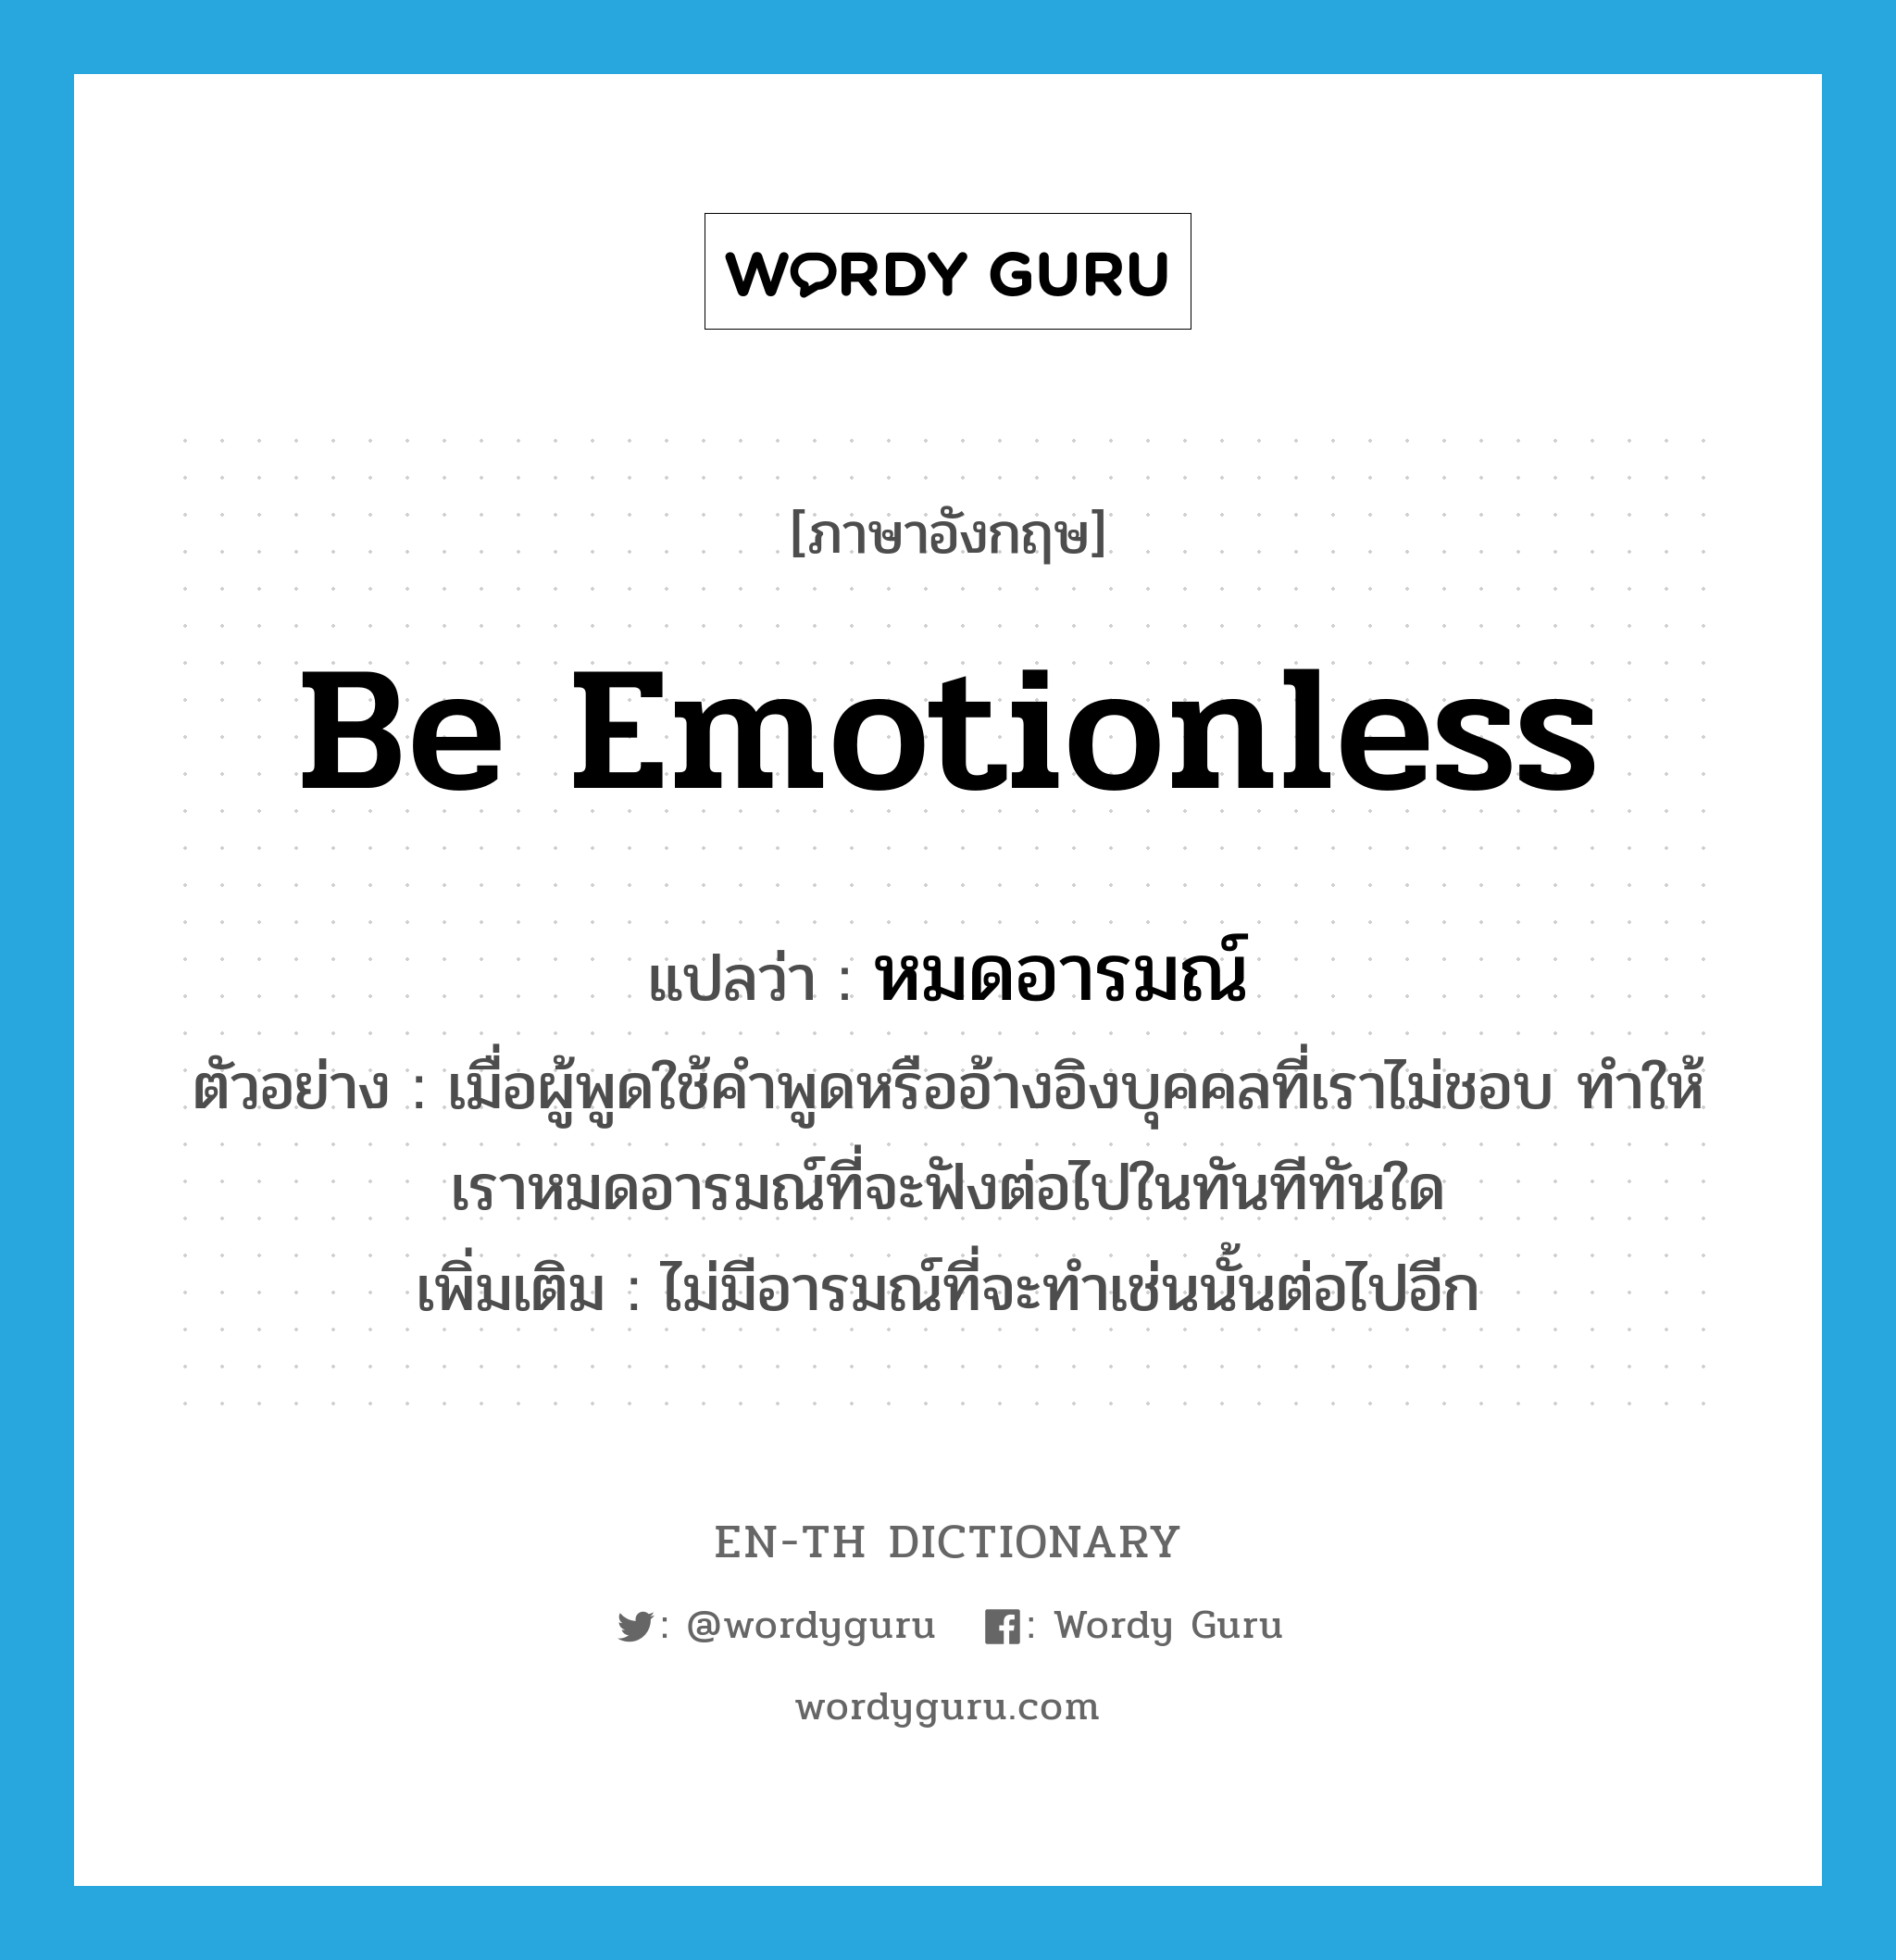 be emotionless แปลว่า?, คำศัพท์ภาษาอังกฤษ be emotionless แปลว่า หมดอารมณ์ ประเภท V ตัวอย่าง เมื่อผู้พูดใช้คำพูดหรืออ้างอิงบุคคลที่เราไม่ชอบ ทำให้เราหมดอารมณ์ที่จะฟังต่อไปในทันทีทันใด เพิ่มเติม ไม่มีอารมณ์ที่จะทำเช่นนั้นต่อไปอีก หมวด V